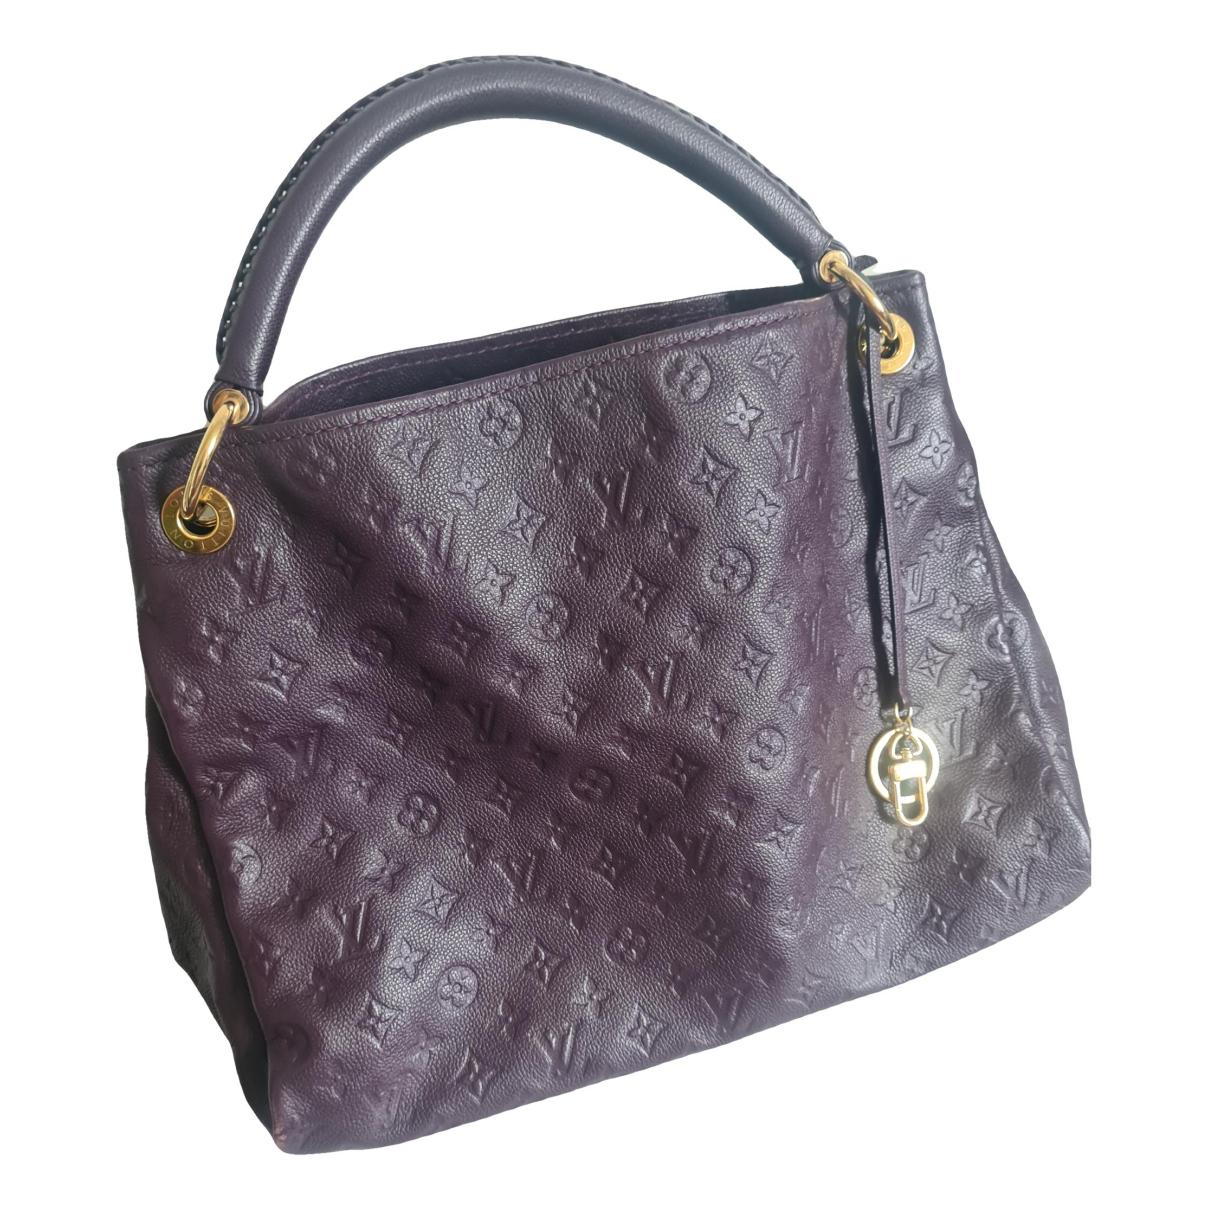 Louis Vuitton - Authenticated Le Fabuleux Handbag - Leather Purple Plain for Women, Very Good Condition